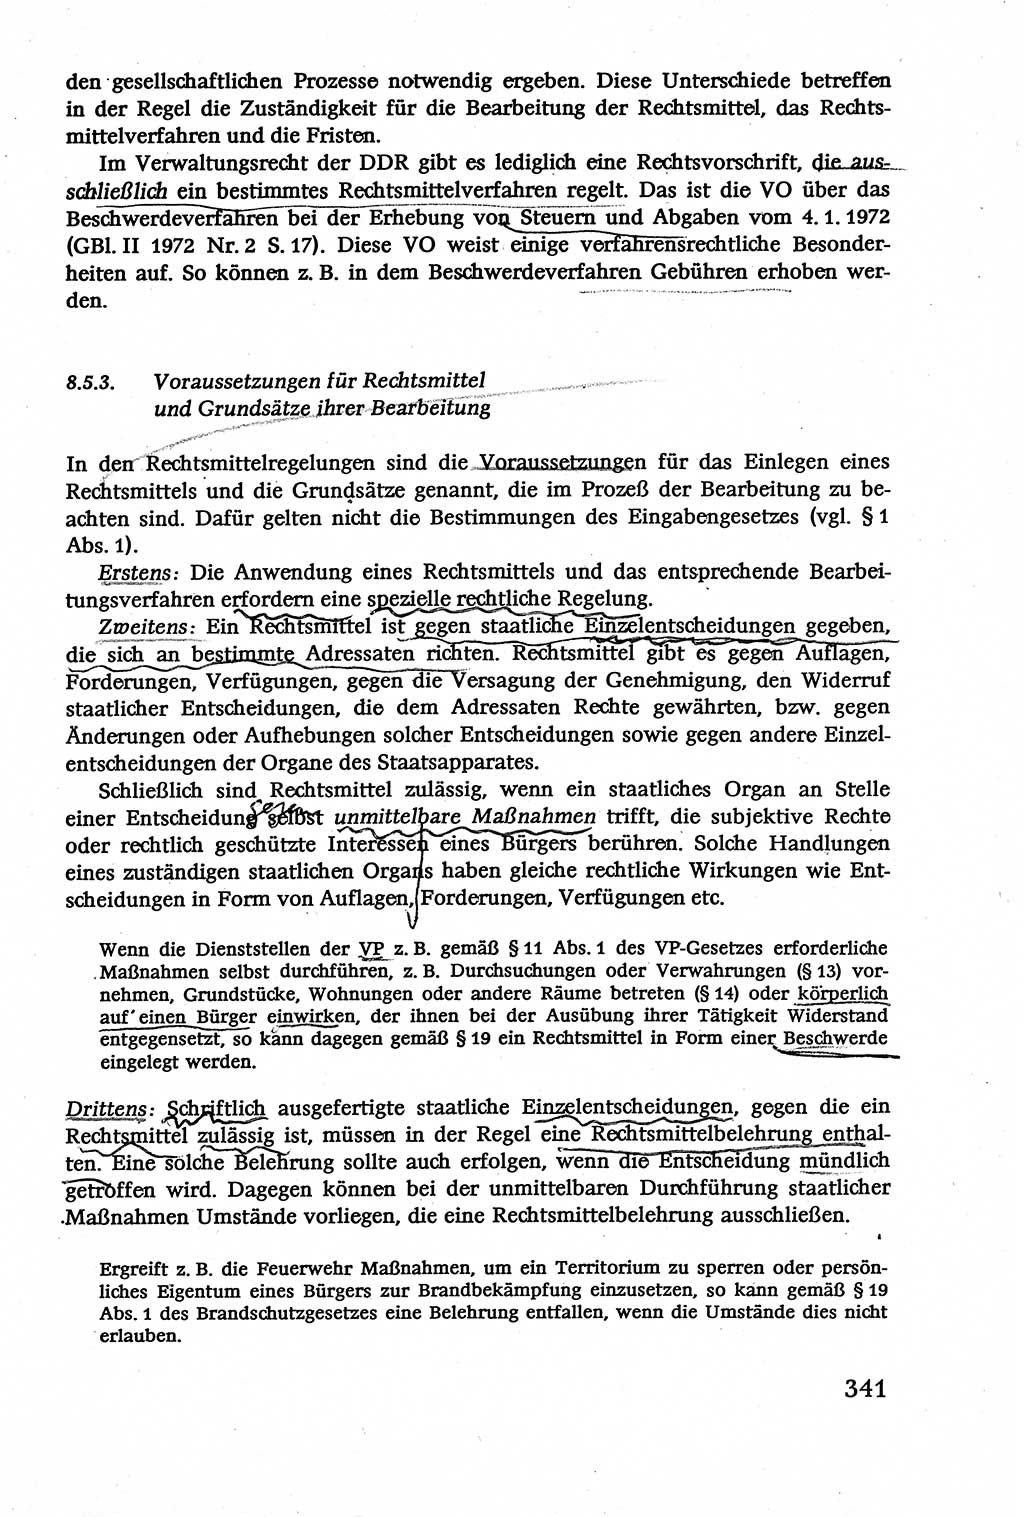 Verwaltungsrecht [Deutsche Demokratische Republik (DDR)], Lehrbuch 1979, Seite 341 (Verw.-R. DDR Lb. 1979, S. 341)